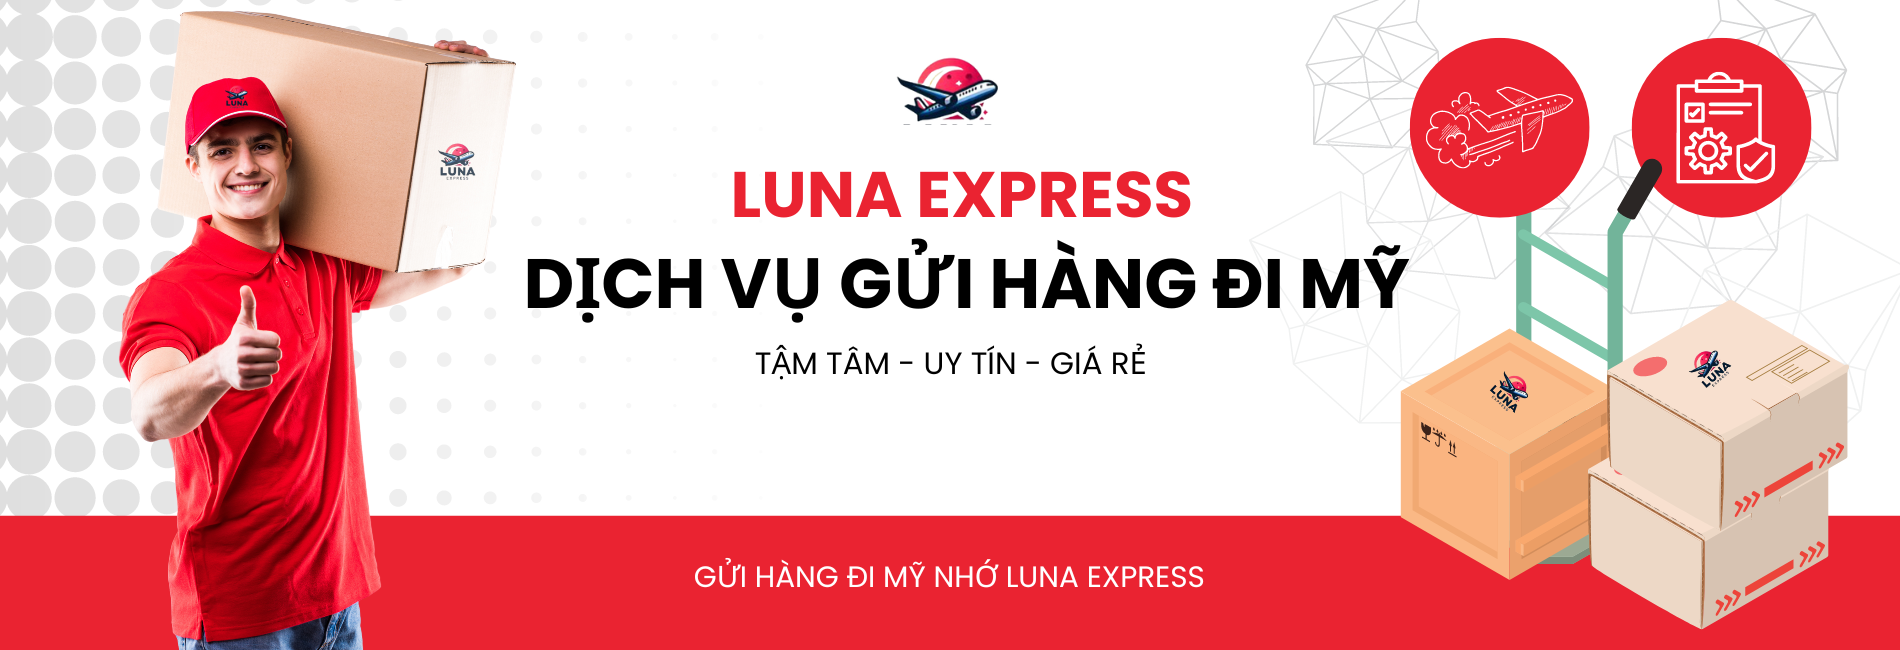 luna express ()